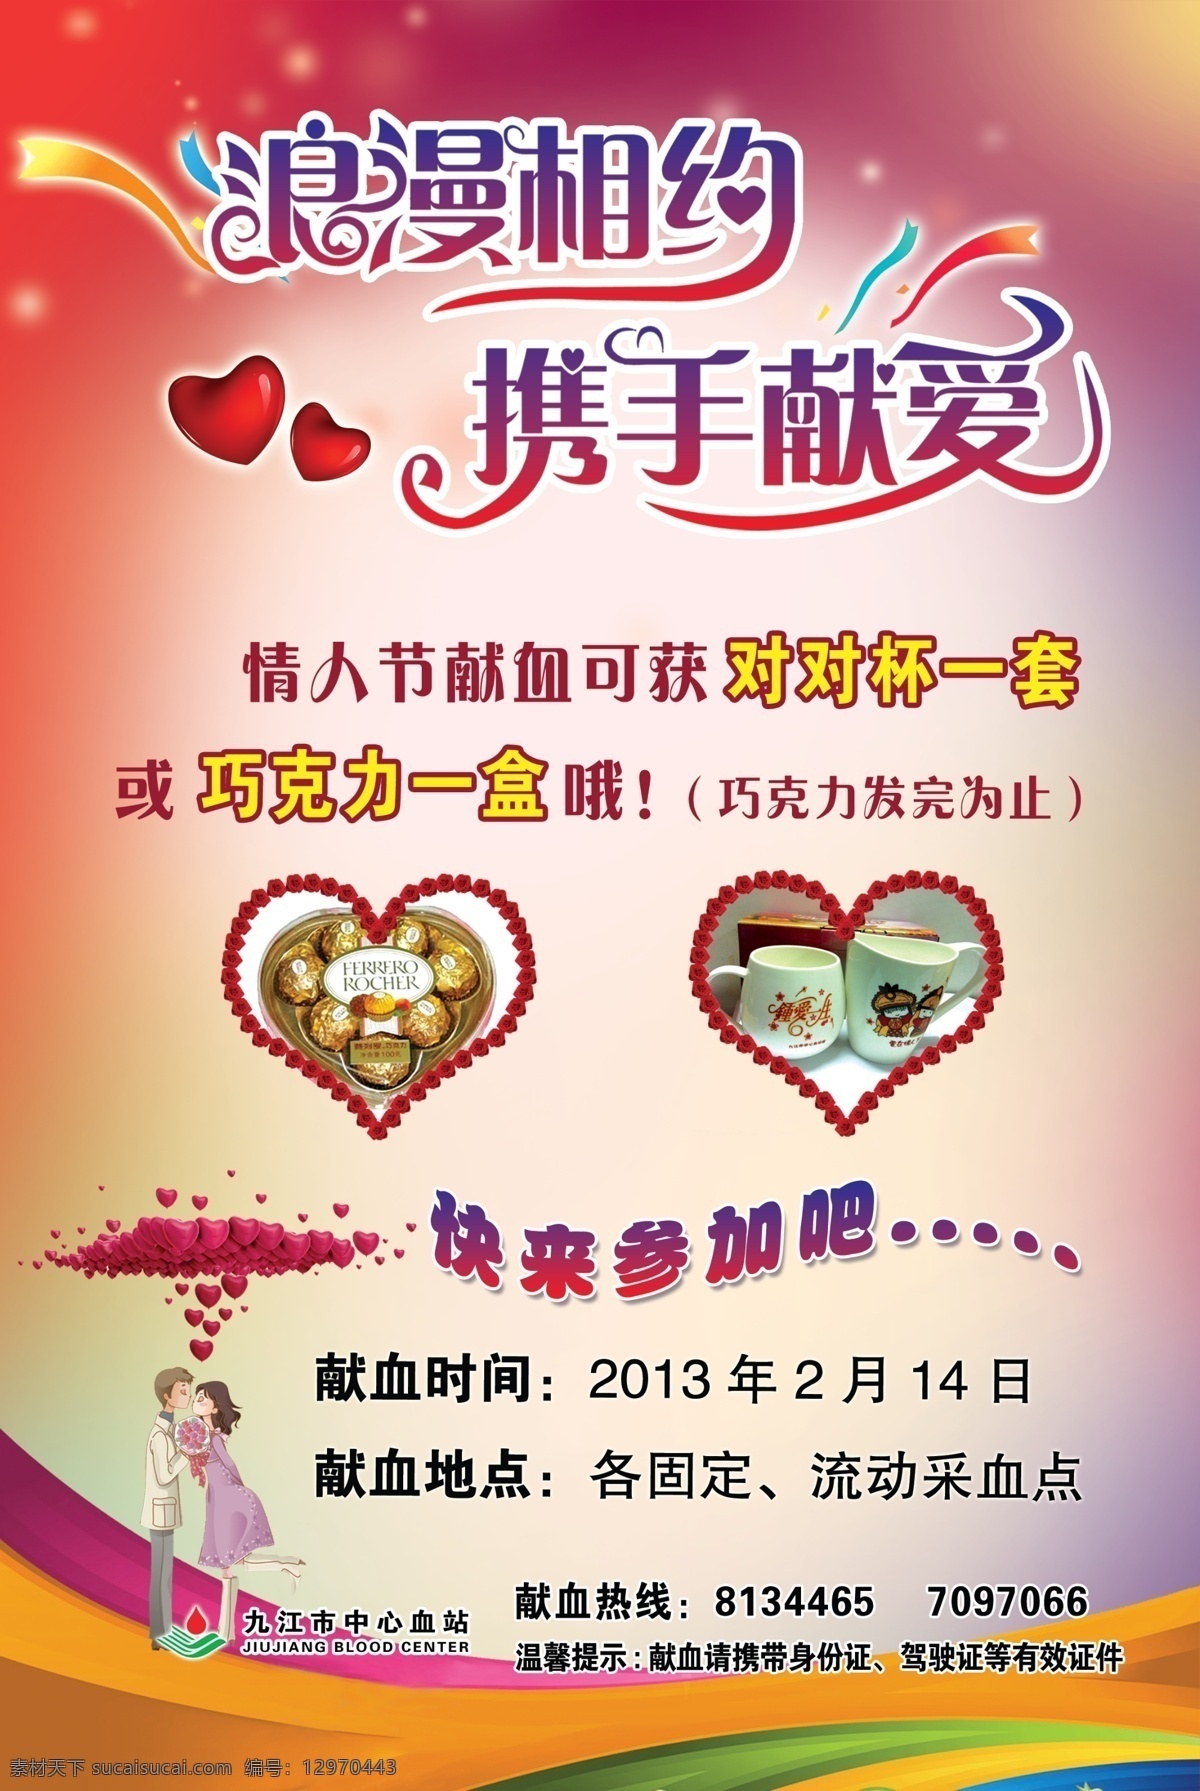 广告设计模板 情人节 献血 源文件 血站 海报 模板下载 九江 中心血站 其他海报设计